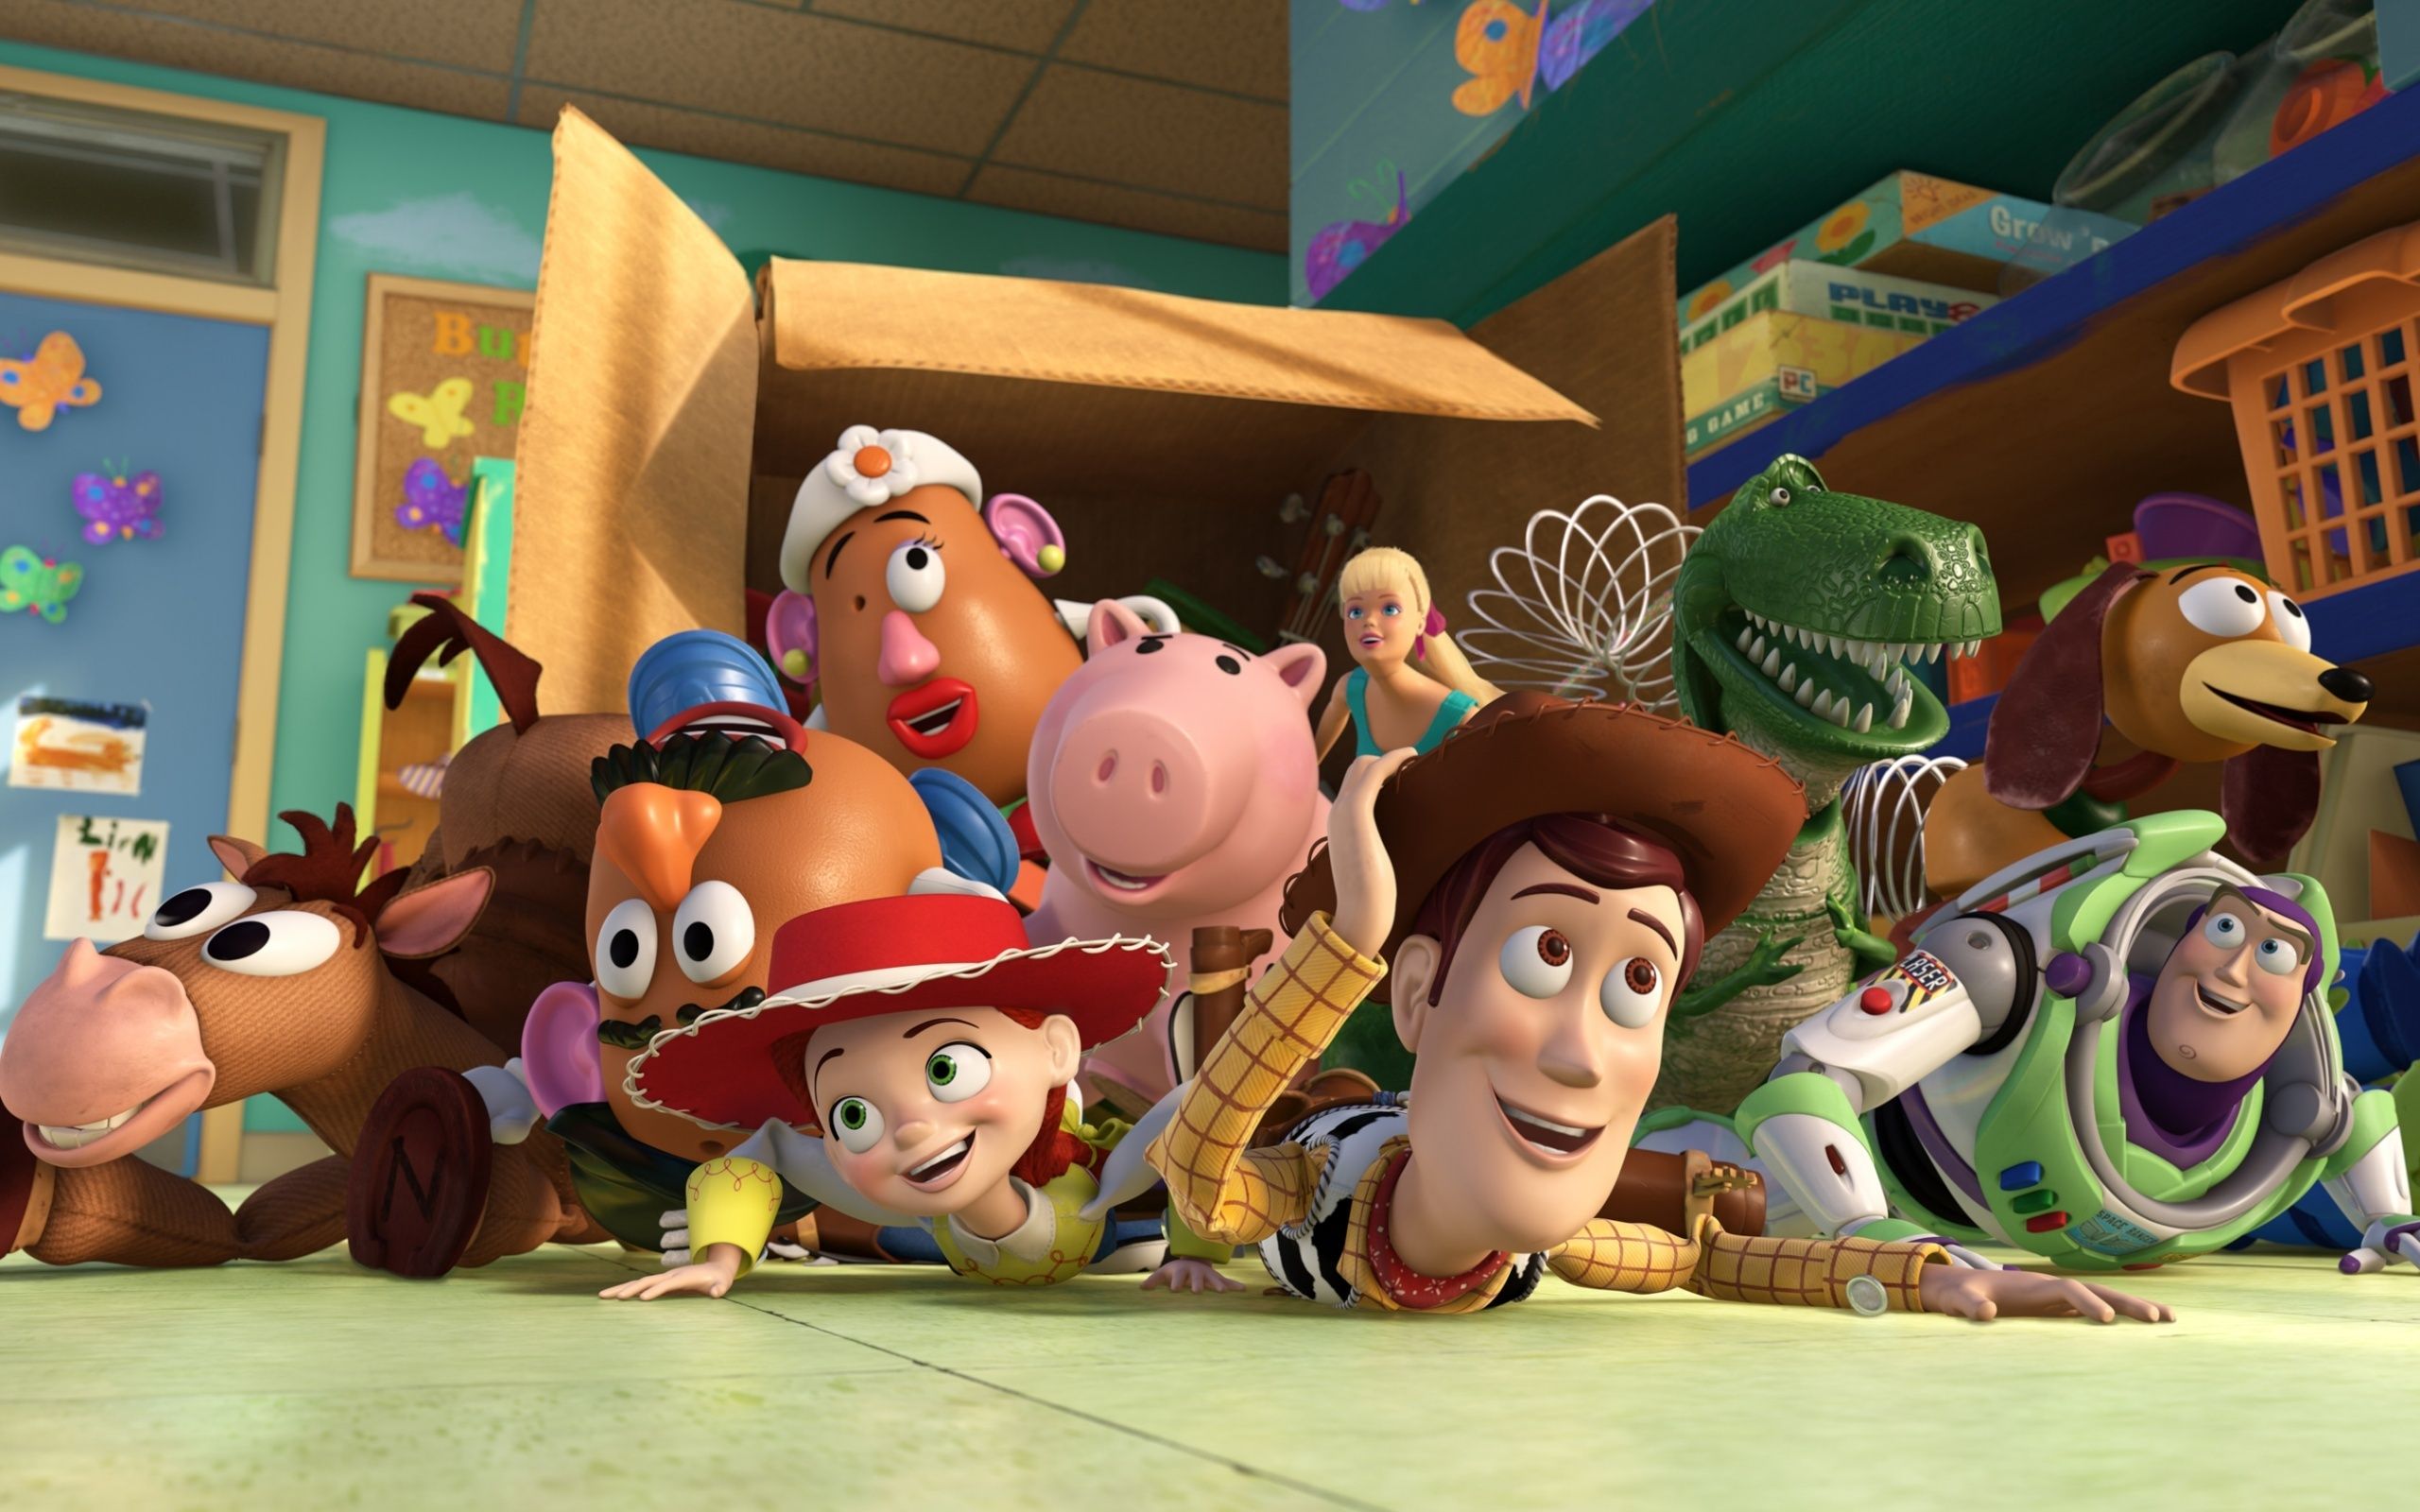 Toy Story fondos de pantalla, fotos, imágenes